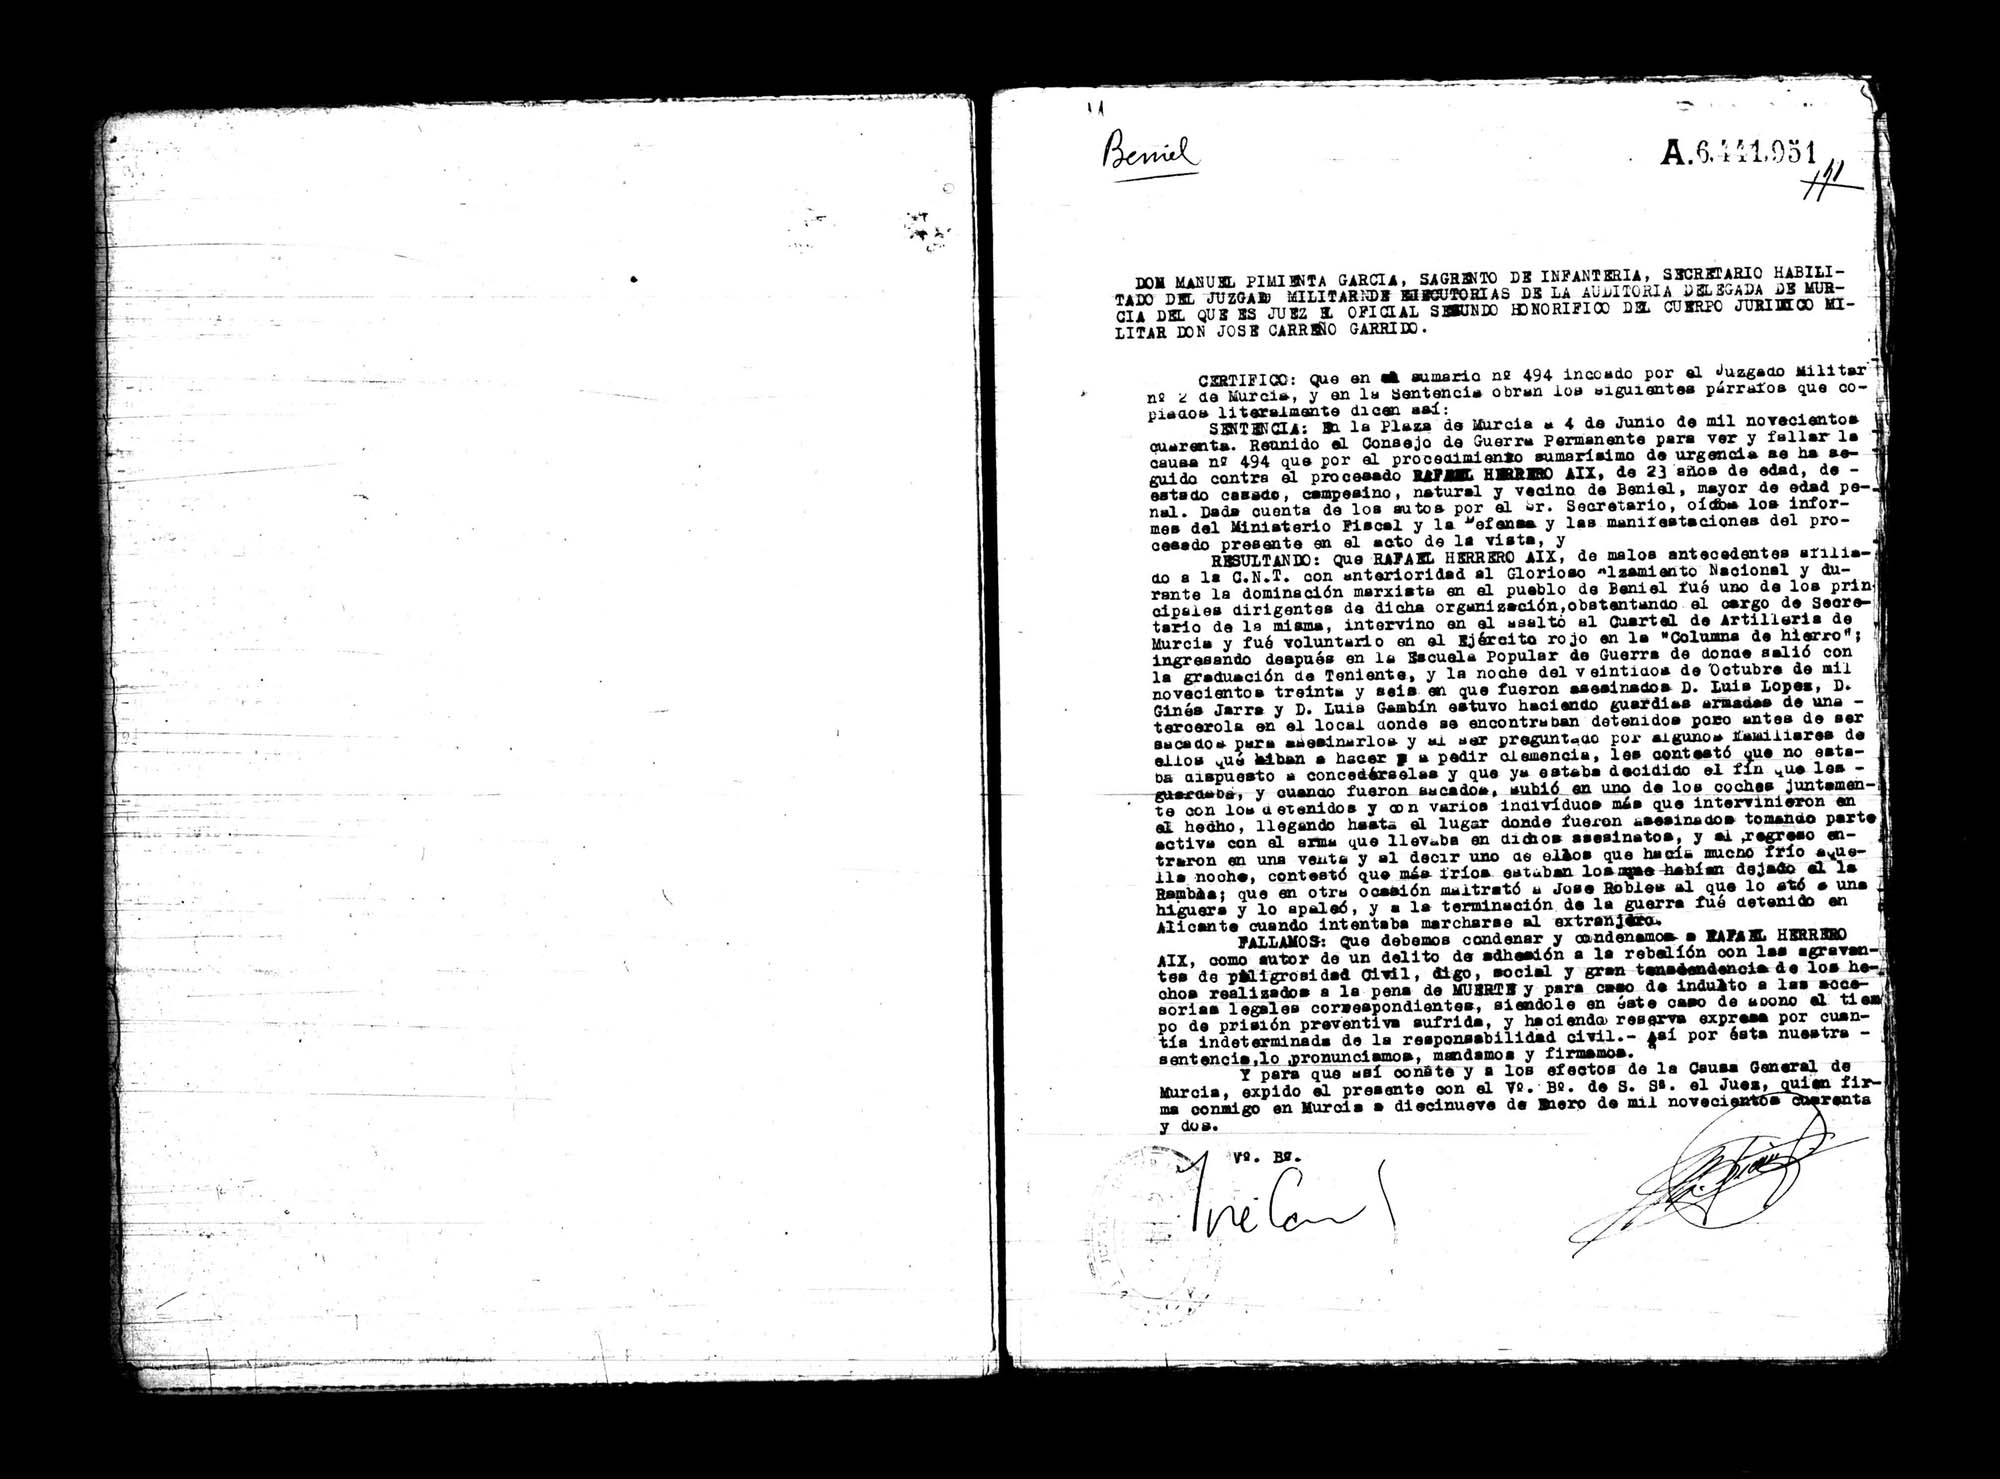 Certificado de la sentencia pronunciada contra Rafael Herrero Aix, causa 494, el 4 de junio de 1940 en Murcia.